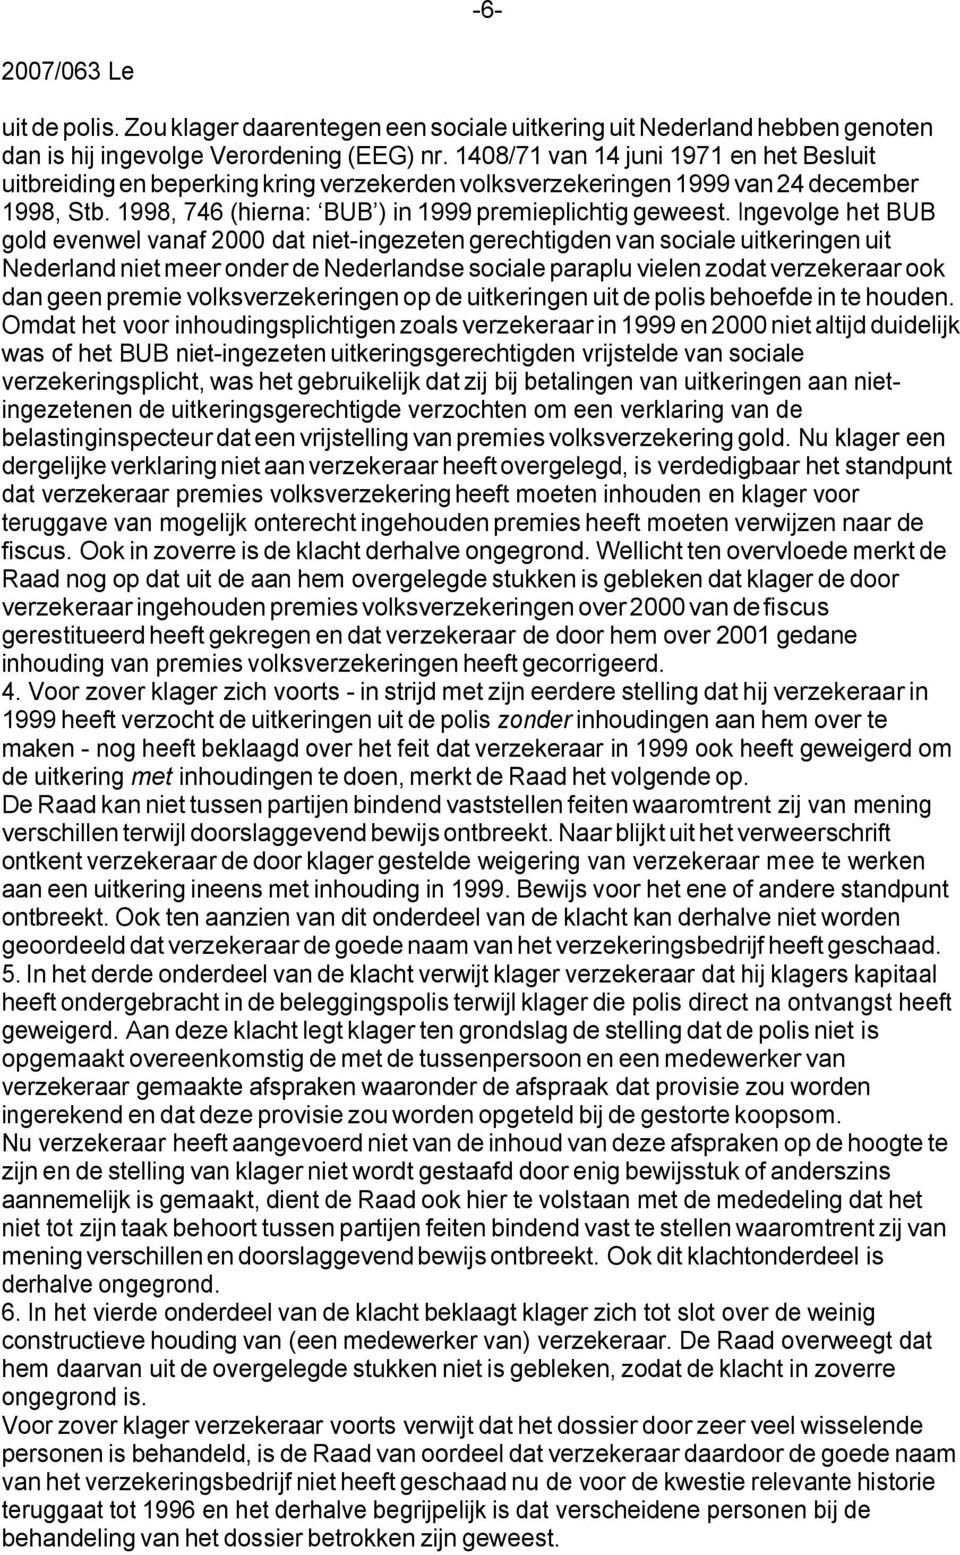 Ingevolge het BUB gold evenwel vanaf 2000 dat niet-ingezeten gerechtigden van sociale uitkeringen uit Nederland niet meer onder de Nederlandse sociale paraplu vielen zodat verzekeraar ook dan geen